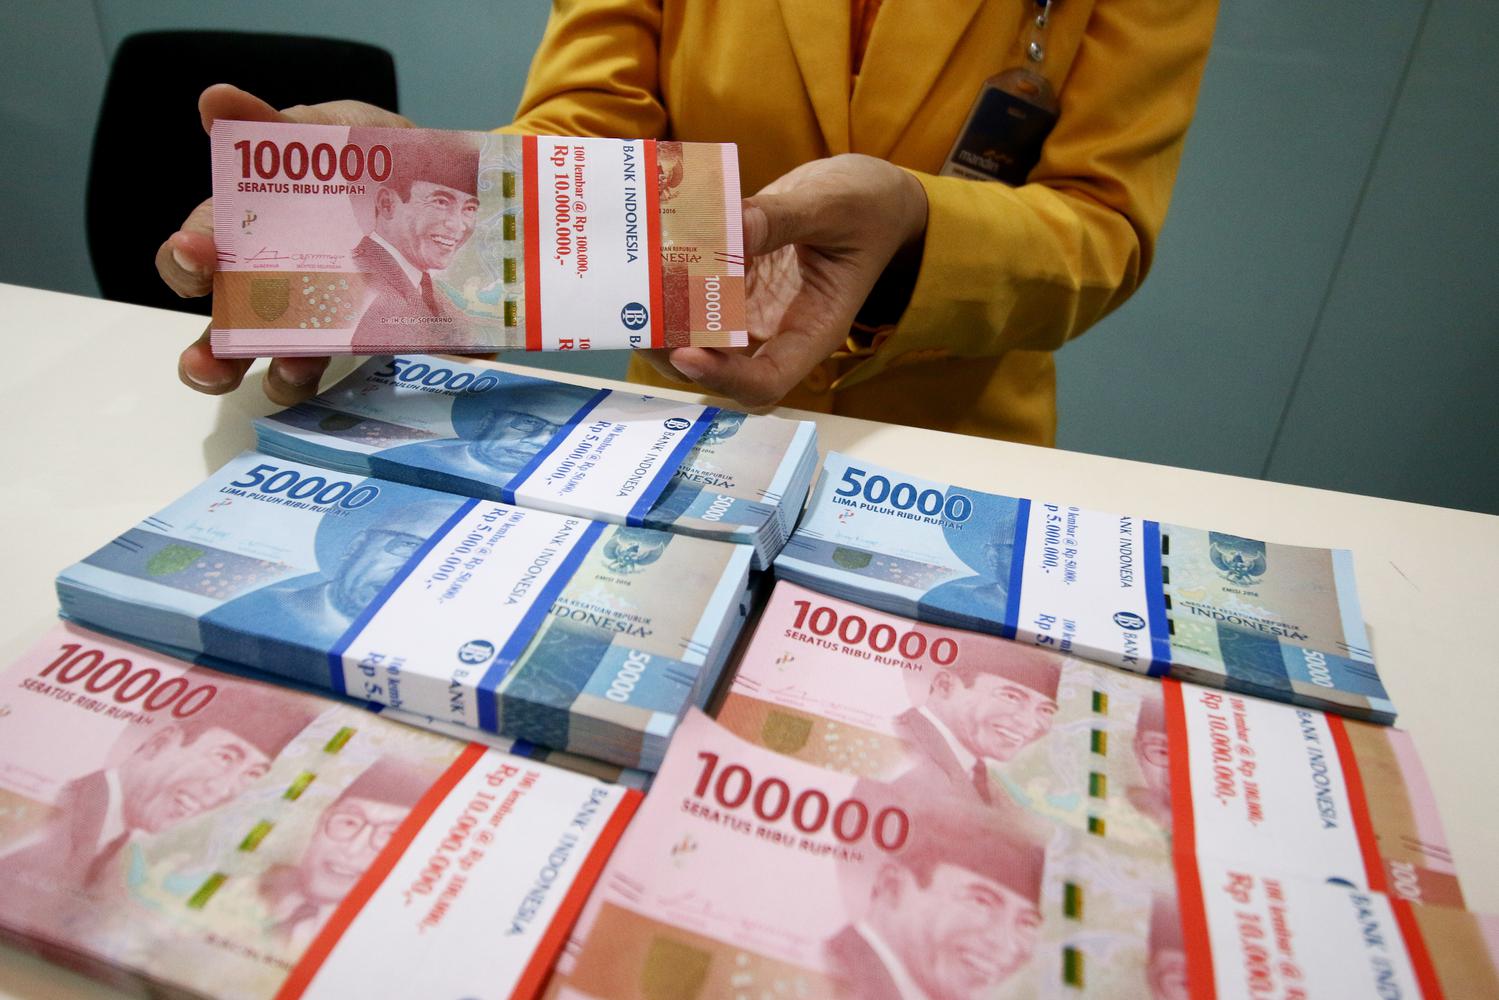 Karyawan menunjukan uang rupiah pecahan 100 ribu dan 50 ribu di Plaza Mandiri, Jakarta, Senin (23/9/2019). Nilai tukar rupiah yang ditransaksikan antar bank di Jakarta pada awal pekan ini dibayangi sentimen perang dagang, terkait batalnya kunjungan deleg